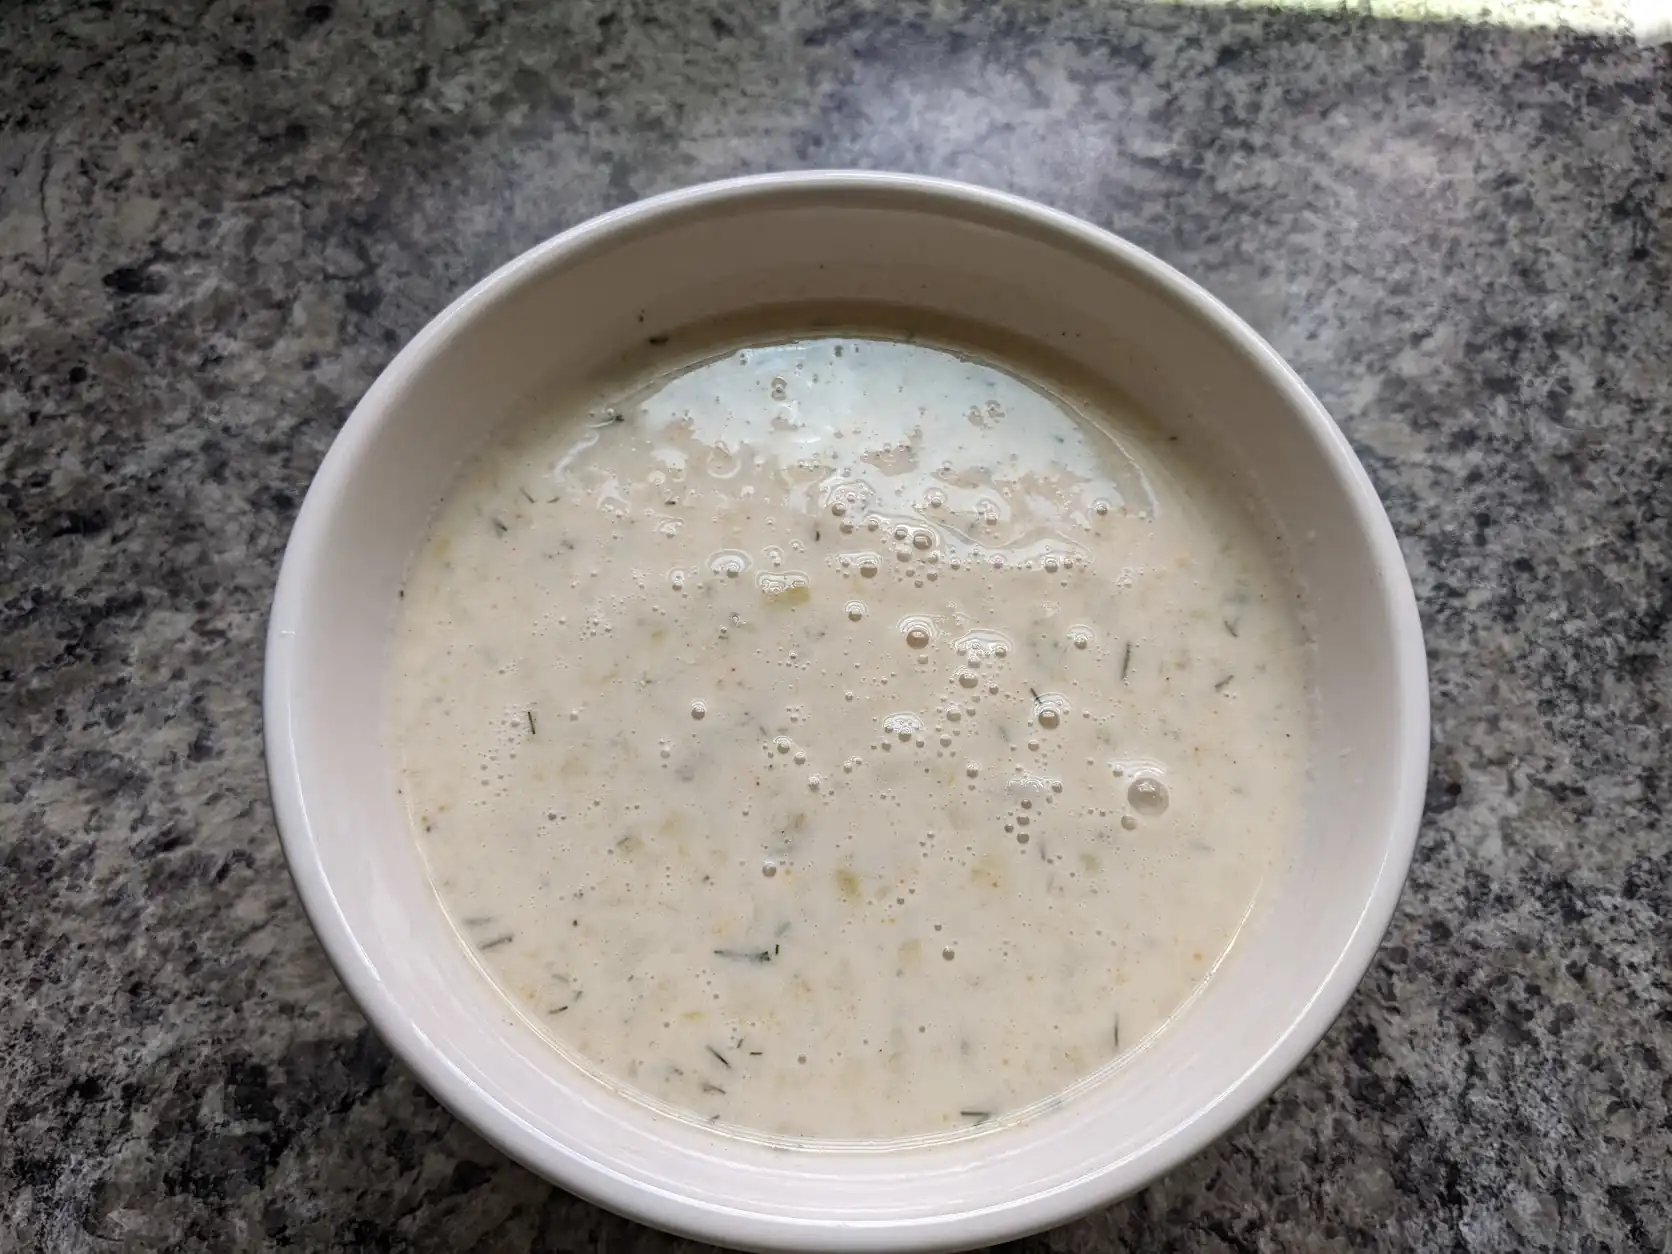 potato leek soup